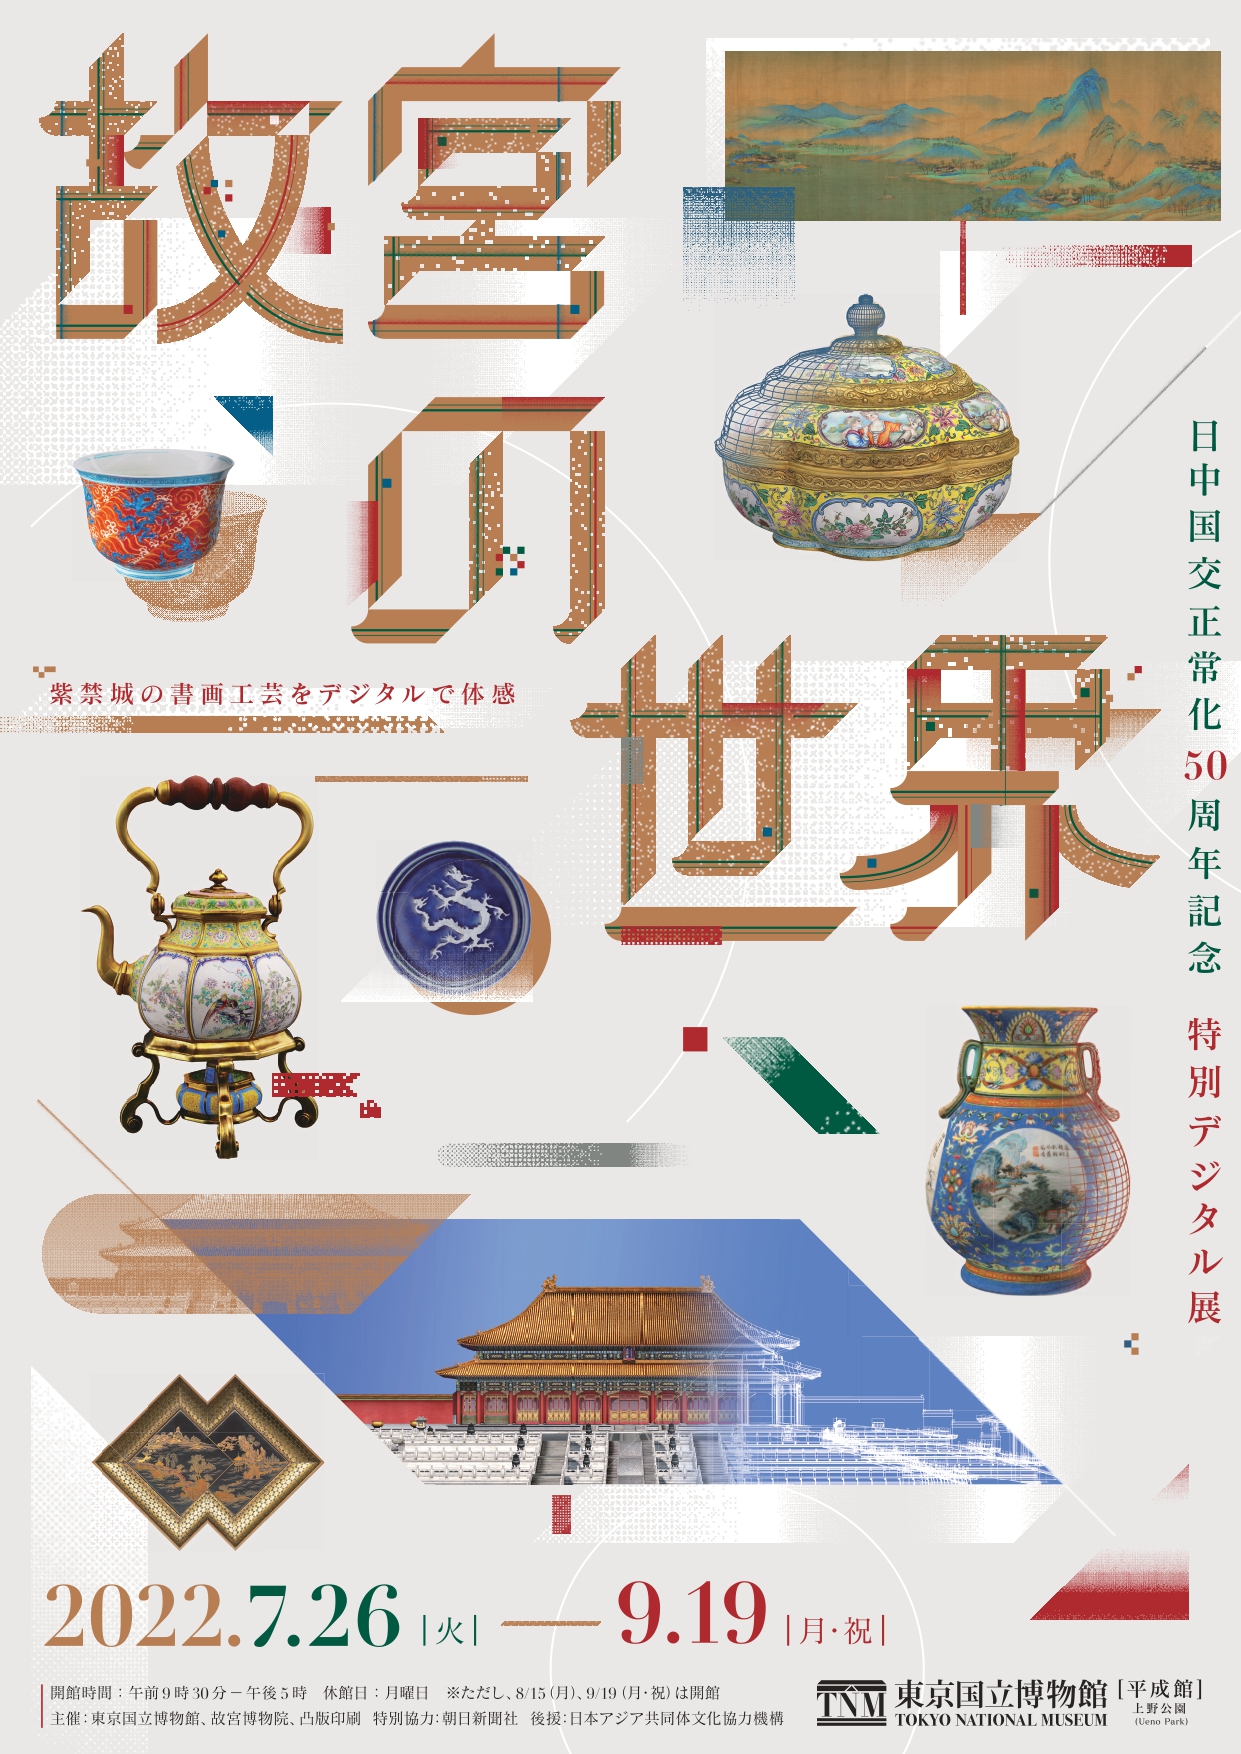 日中国交正常化50周年記念 特別デジタル展『故宮の世界』」 （東京国立